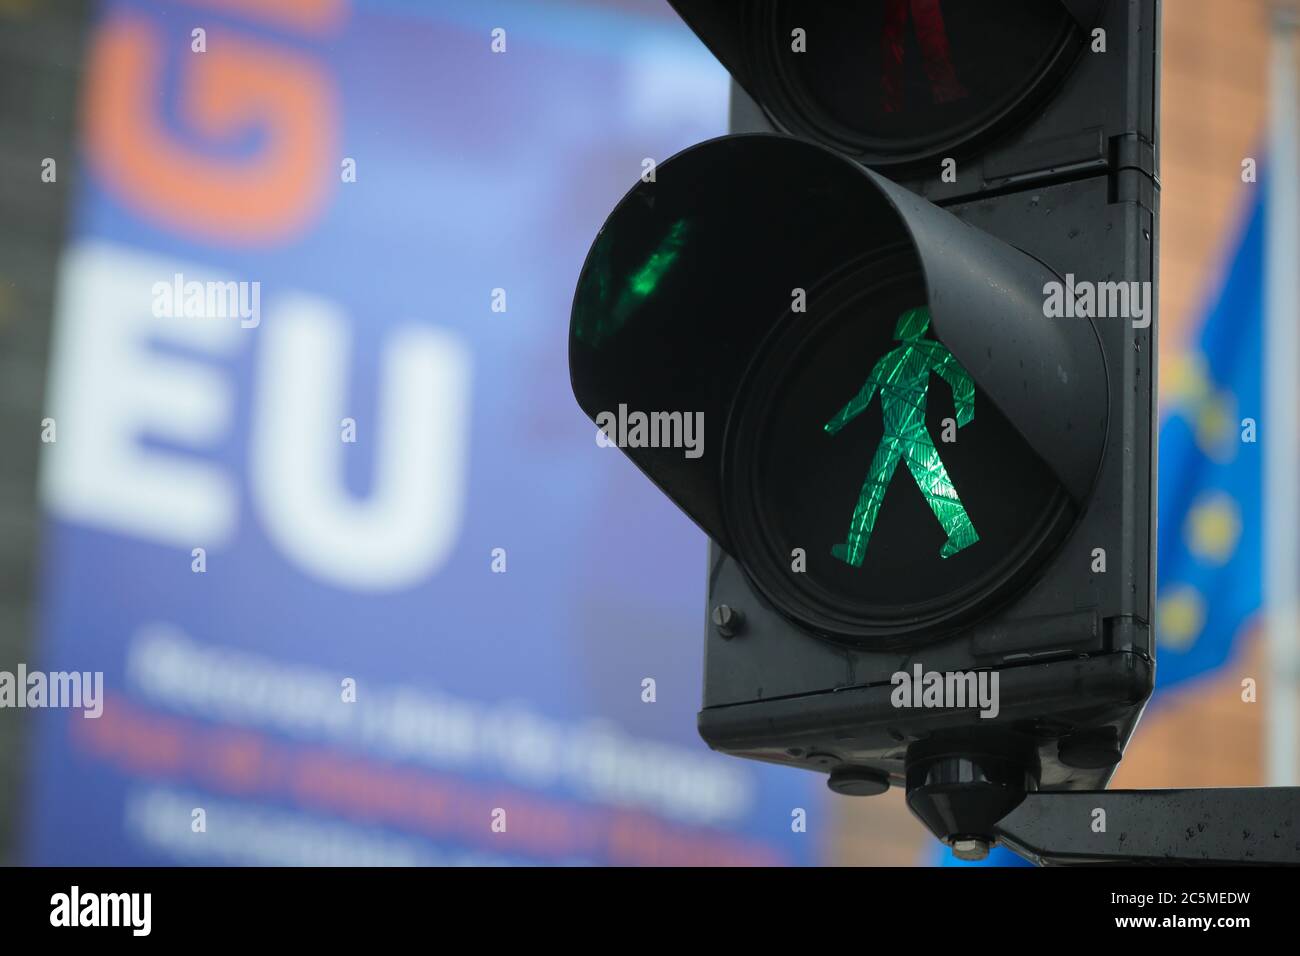 Peking, Belgien. Juni 2020. Vor dem Sitz der Europäischen Kommission in Brüssel, Belgien, am 30. Juni 2020, ist grünes Licht zu sehen. UM MIT DEN XINHUA SCHLAGZEILEN VOM 4. JULI 2020 zu GEHEN Quelle: Zheng Huansong/Xinhua/Alamy Live News Stockfoto